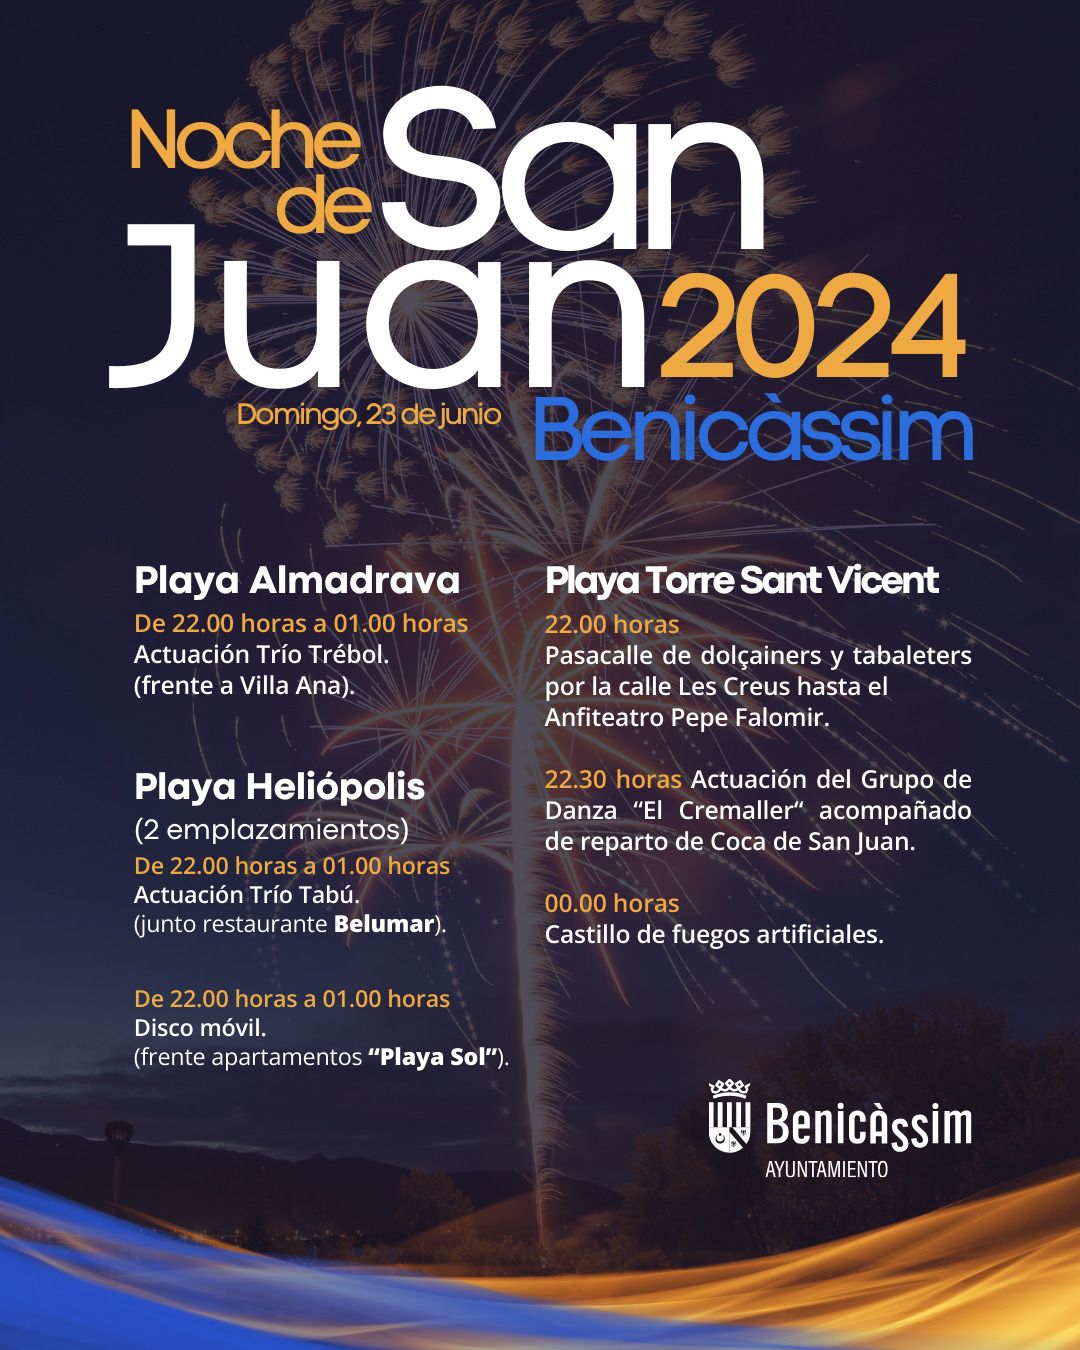 Cartel con la programación de la noche de San Juan 2024 en Benicàssim